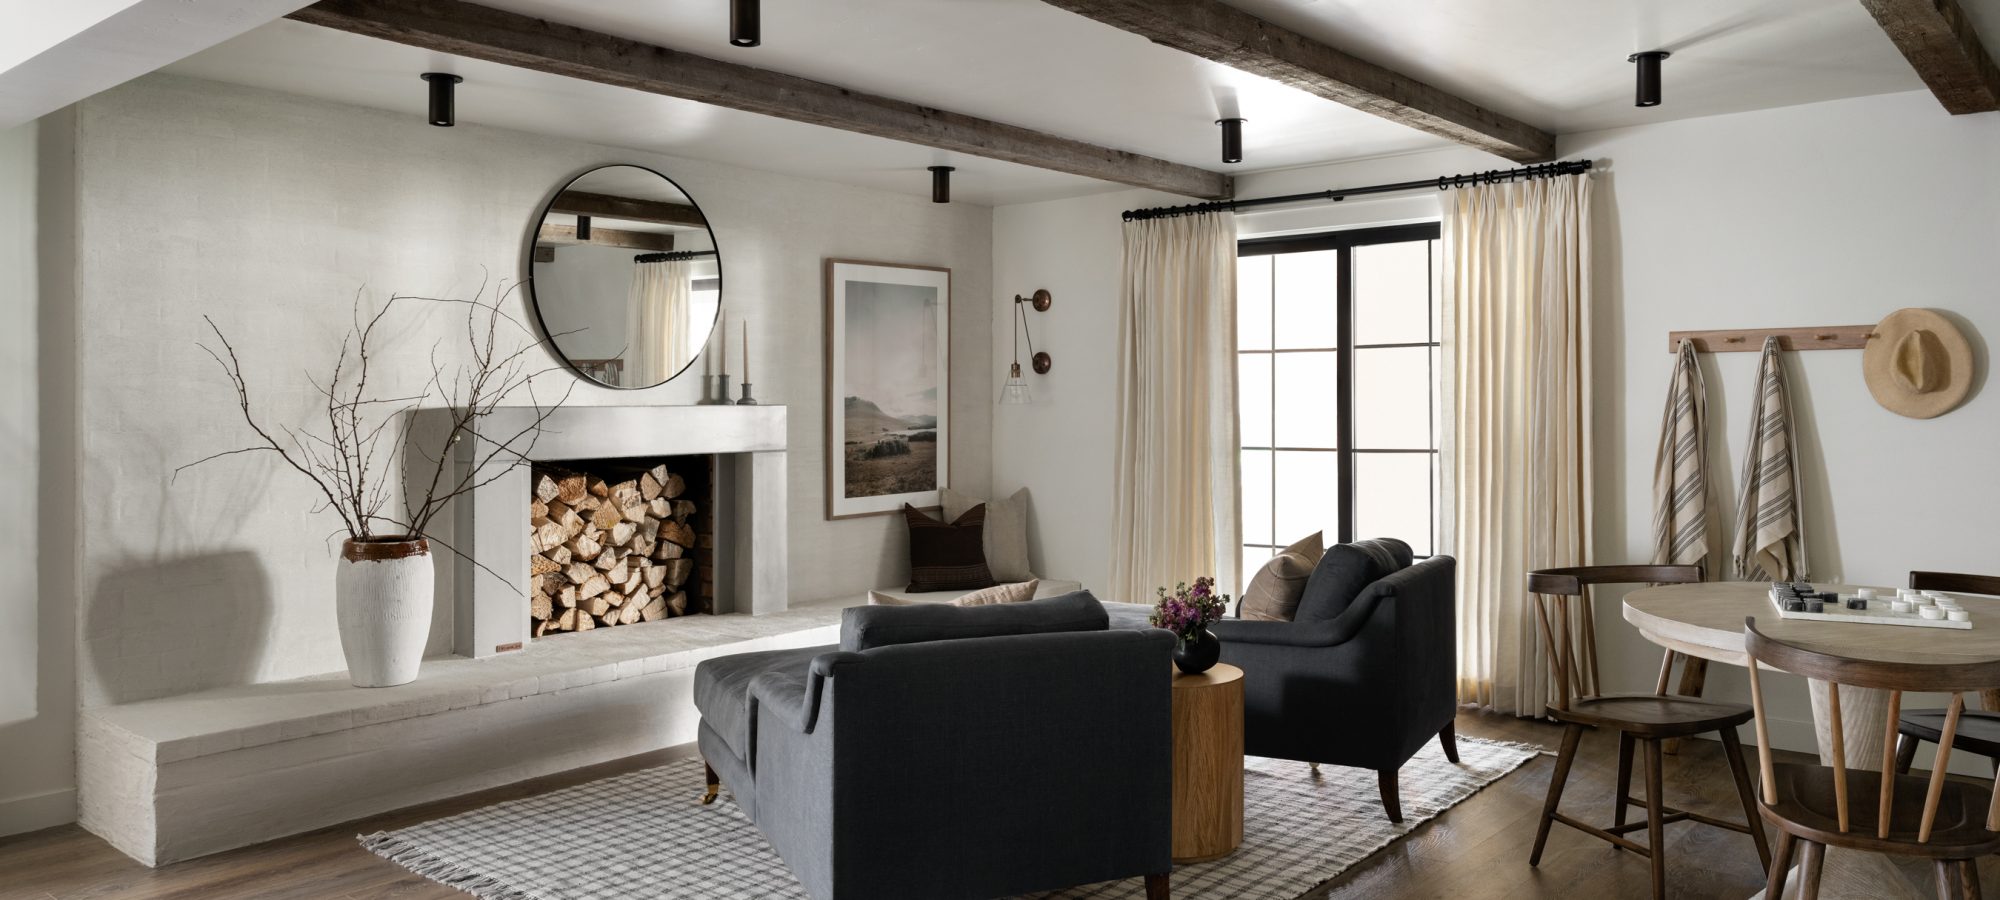 Tori fireplace surround featured on Netflix